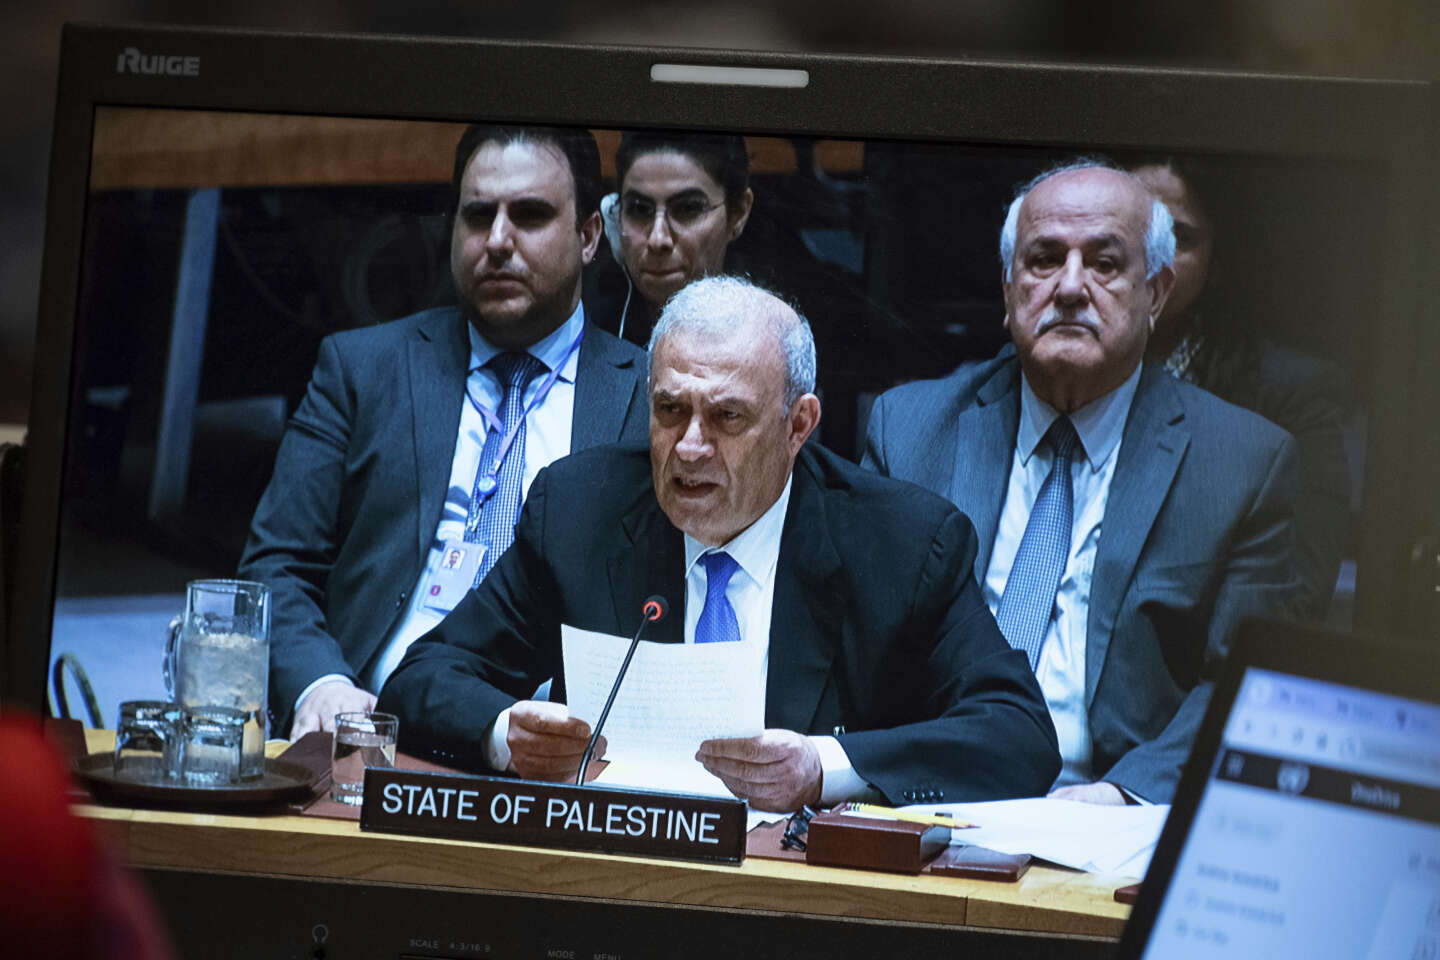 Les Palestiniens échouent à devenir membre à part entière de l’ONU après un véto des Etats-Unis